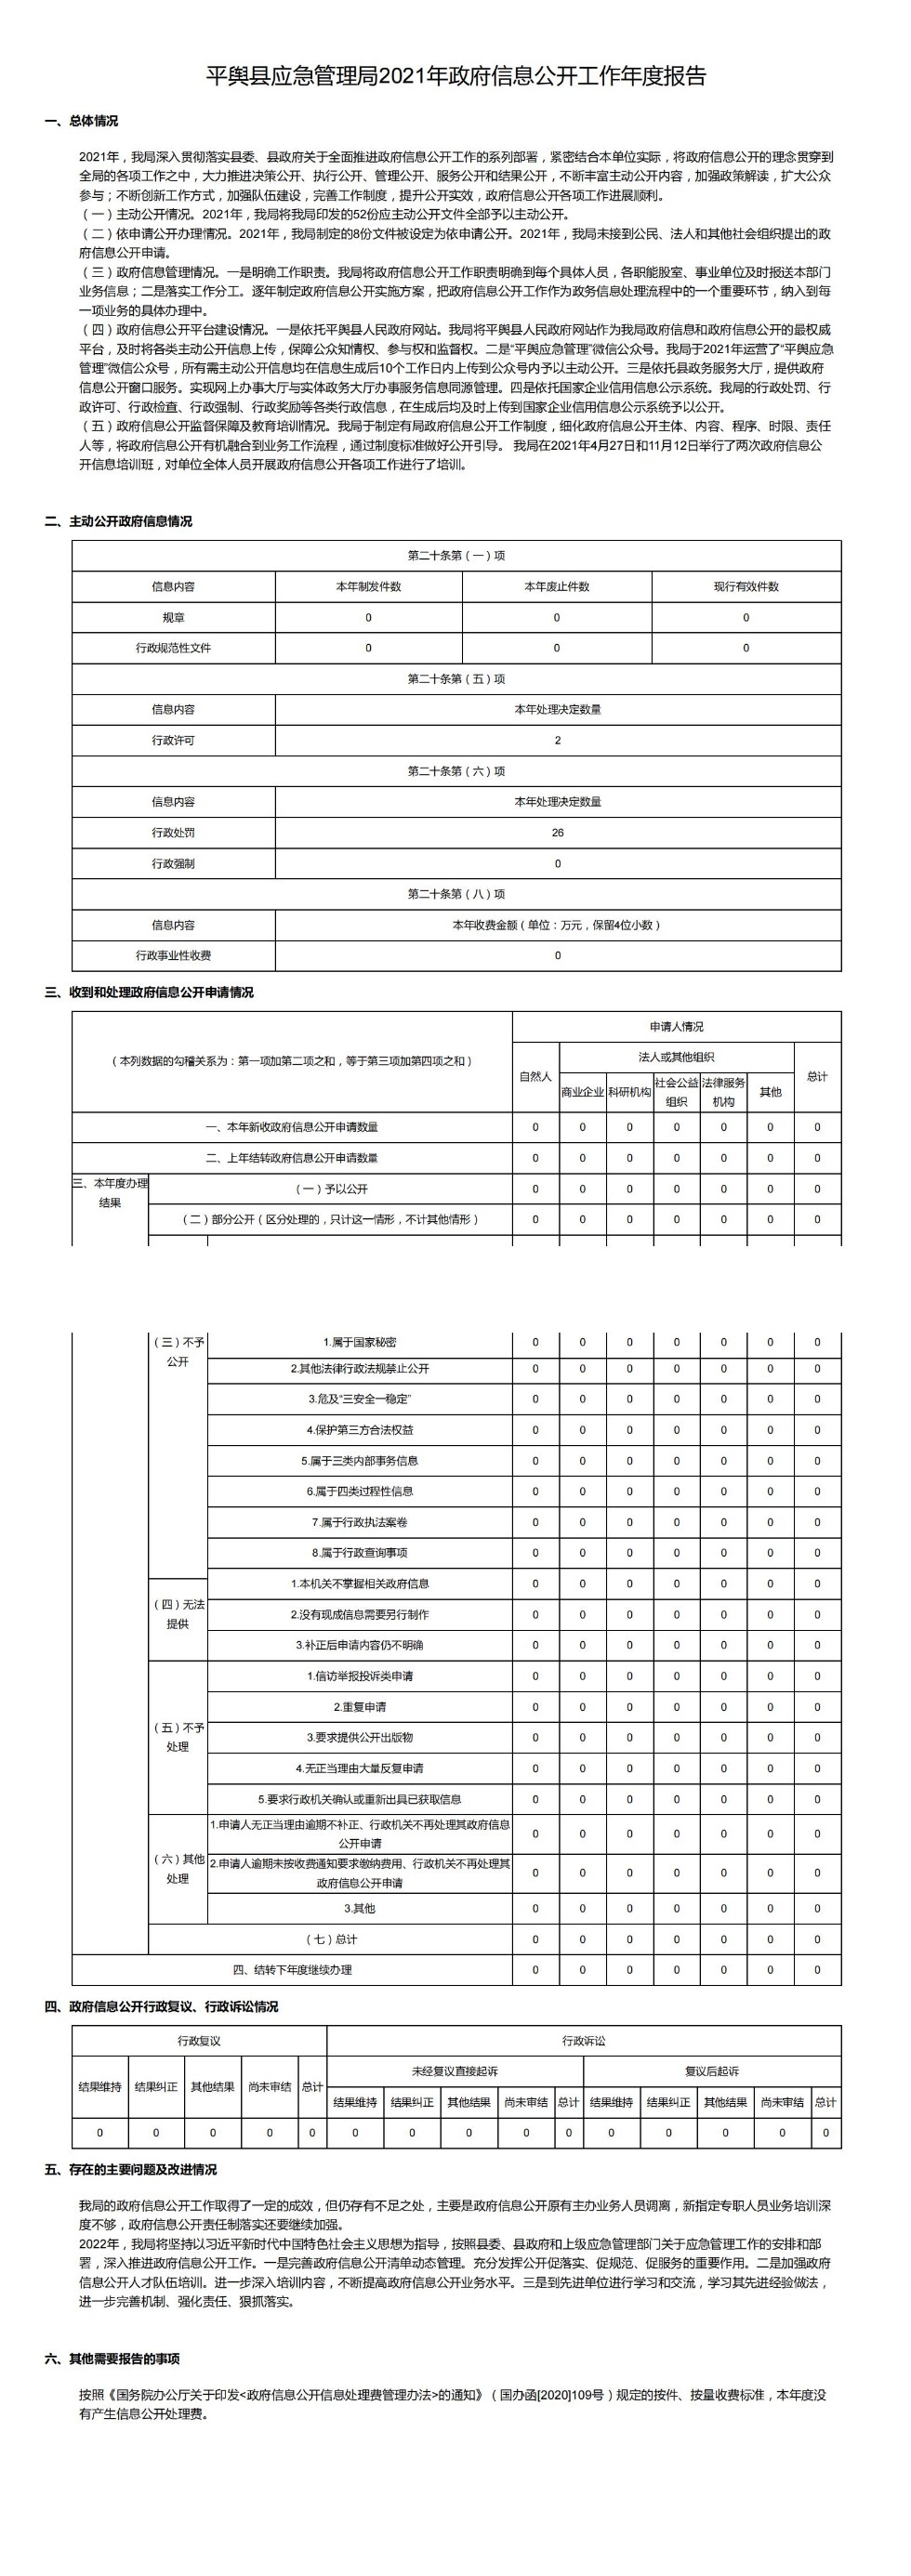 平舆县应急管理局2021年政府信息公开工作年度报告_00.jpg